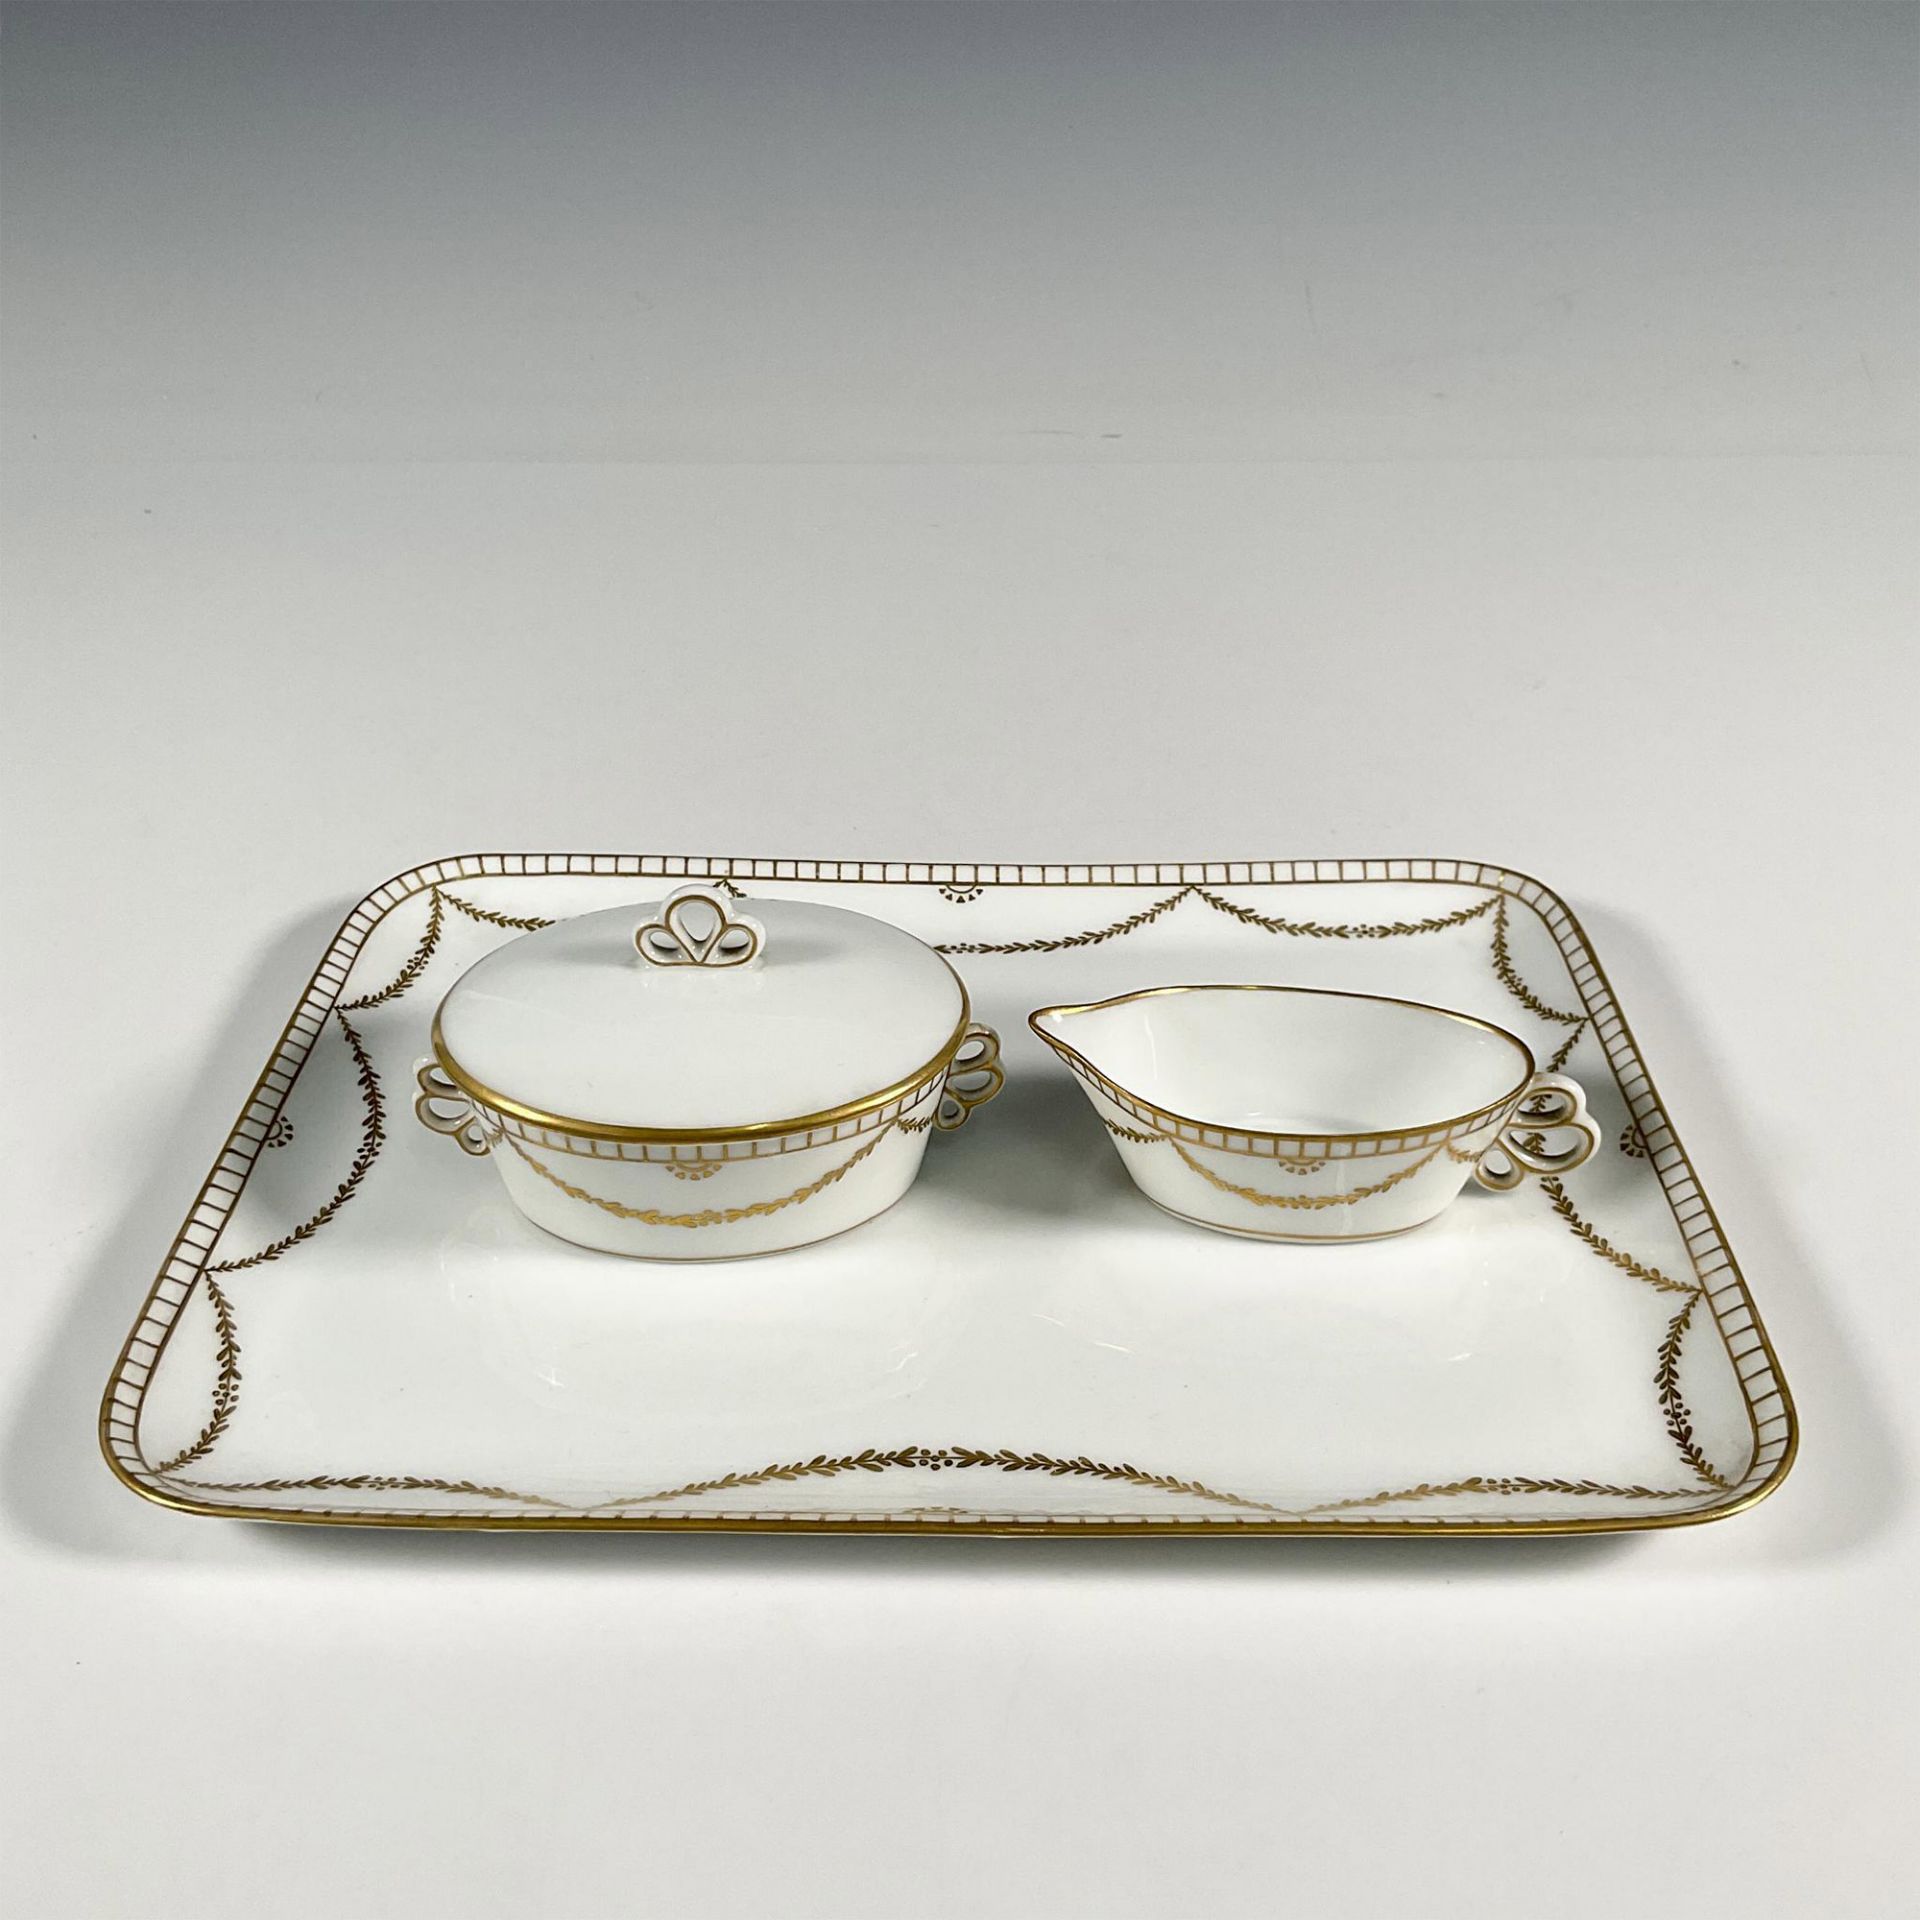 3pc Royal Copenhagen Porcelain Dessert Tray w/Serving Pieces